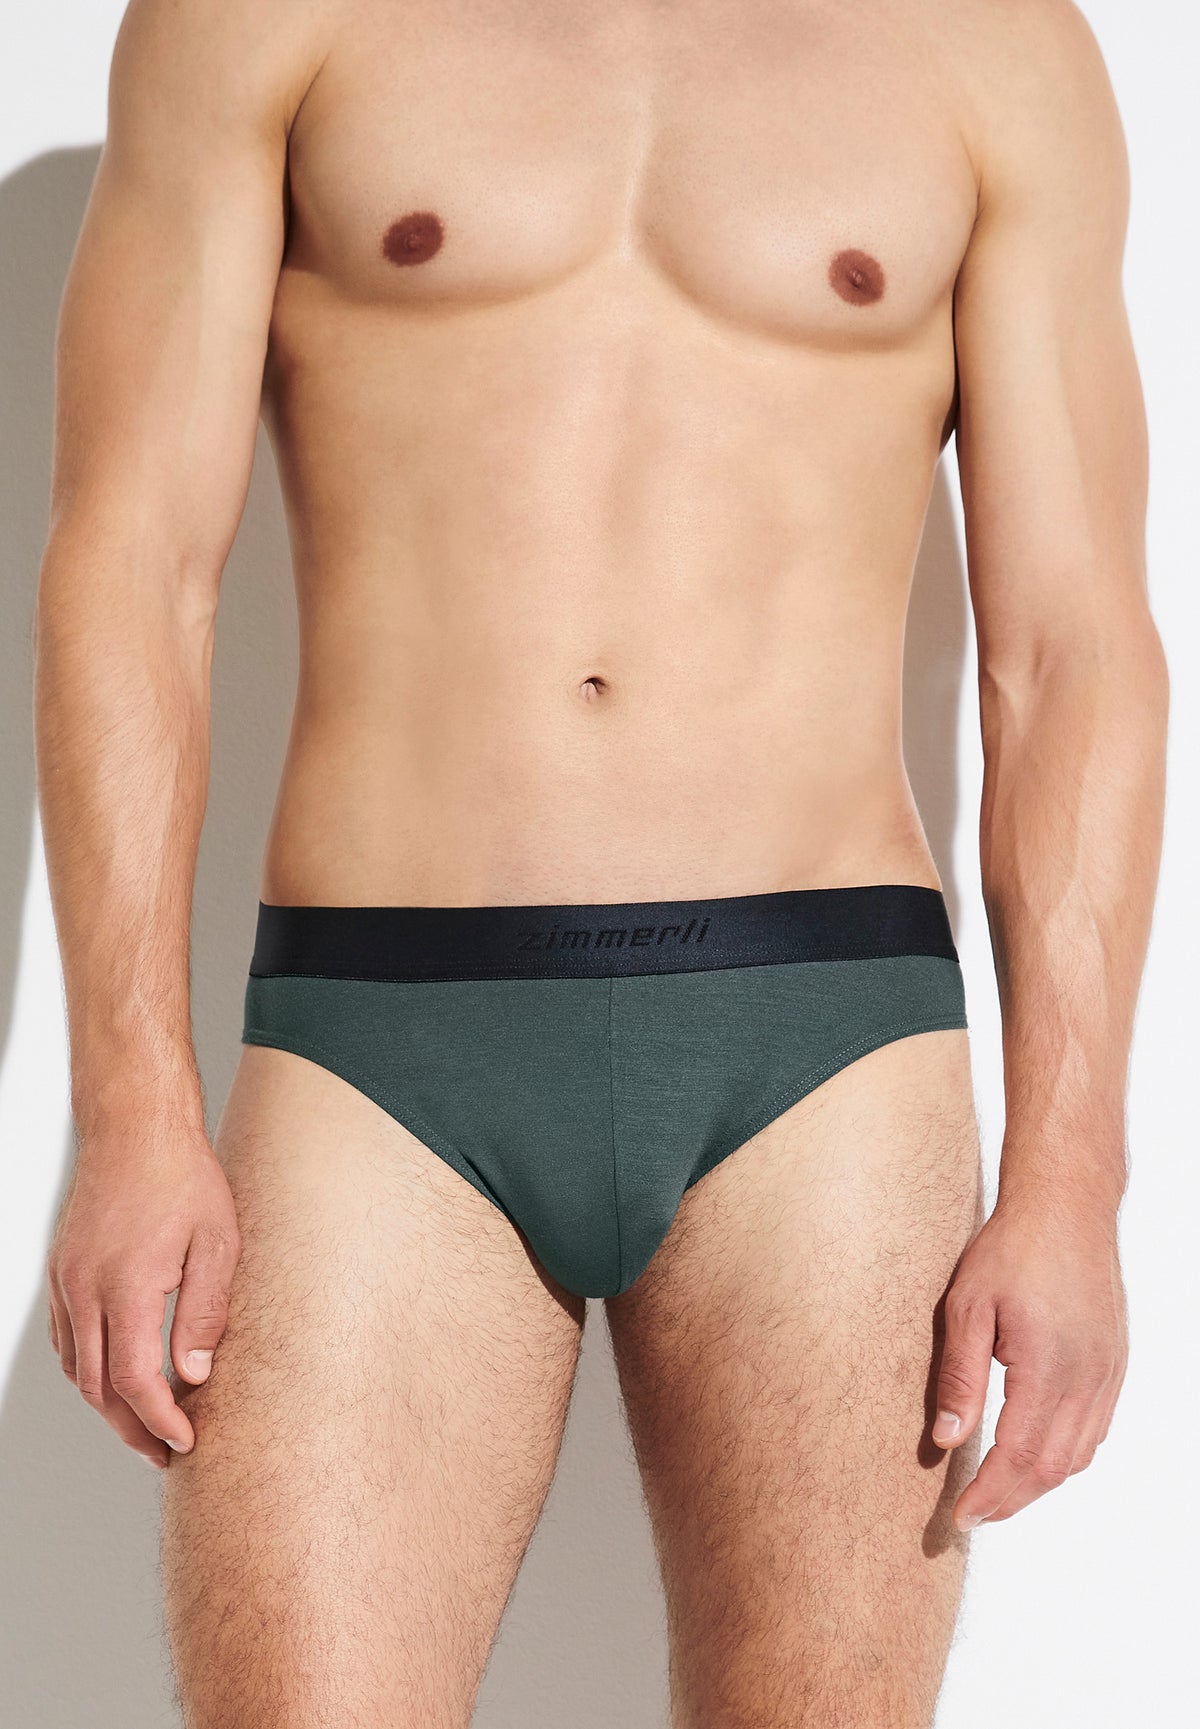 Men Underwear - Zimmerli of Switzerland (Schweiz)